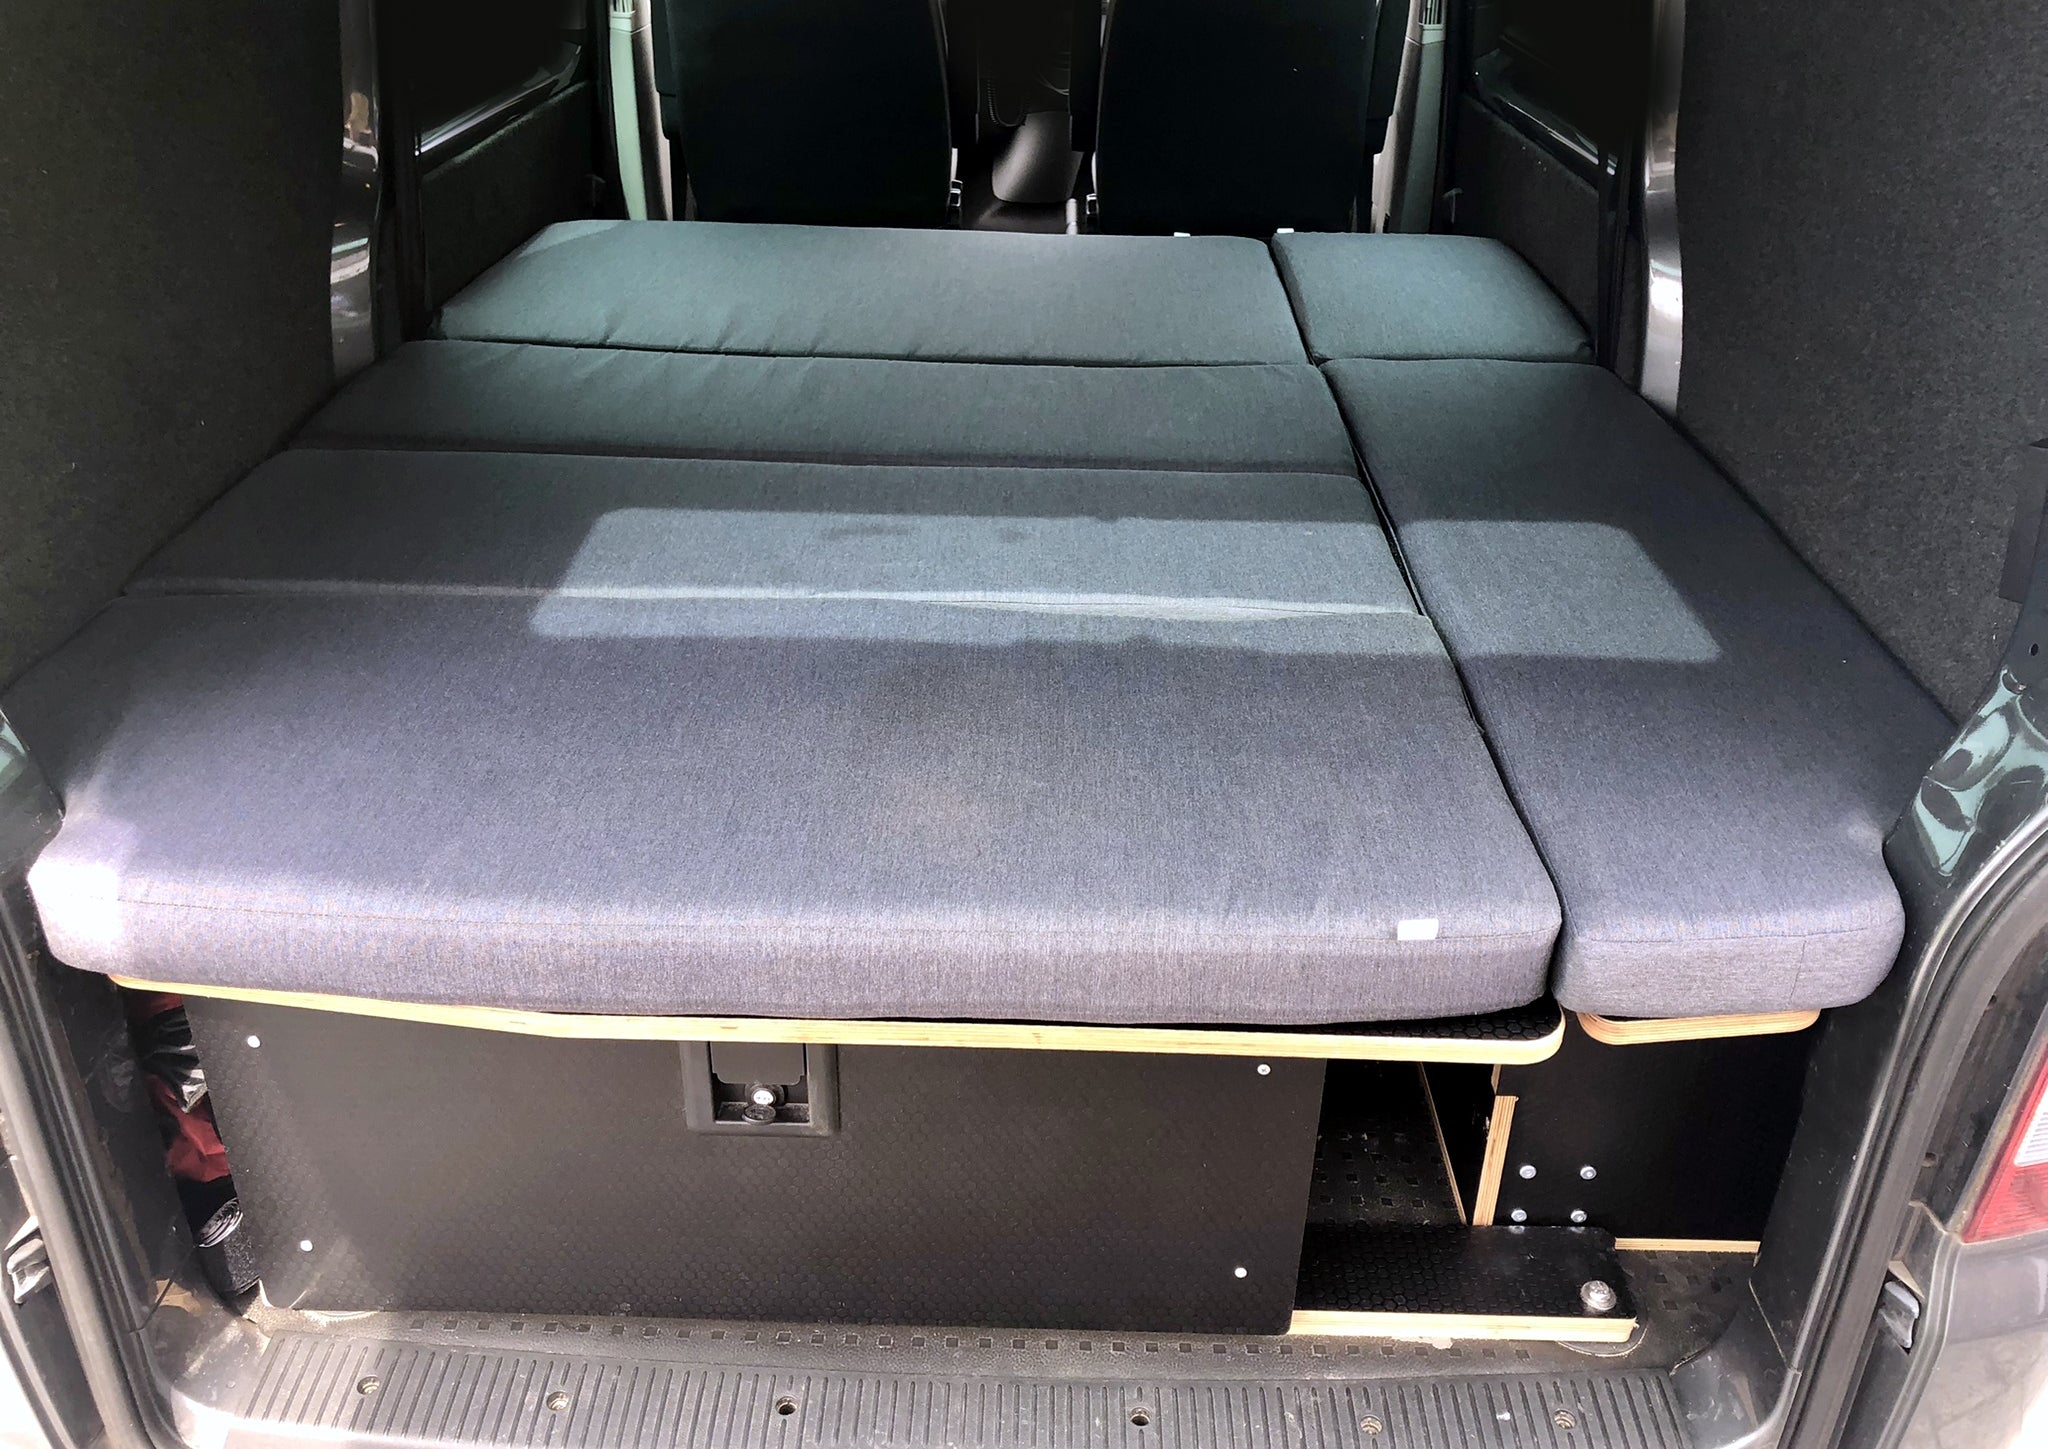 Piggl SIDE-POD furniture for VW Transporter camper van conversions